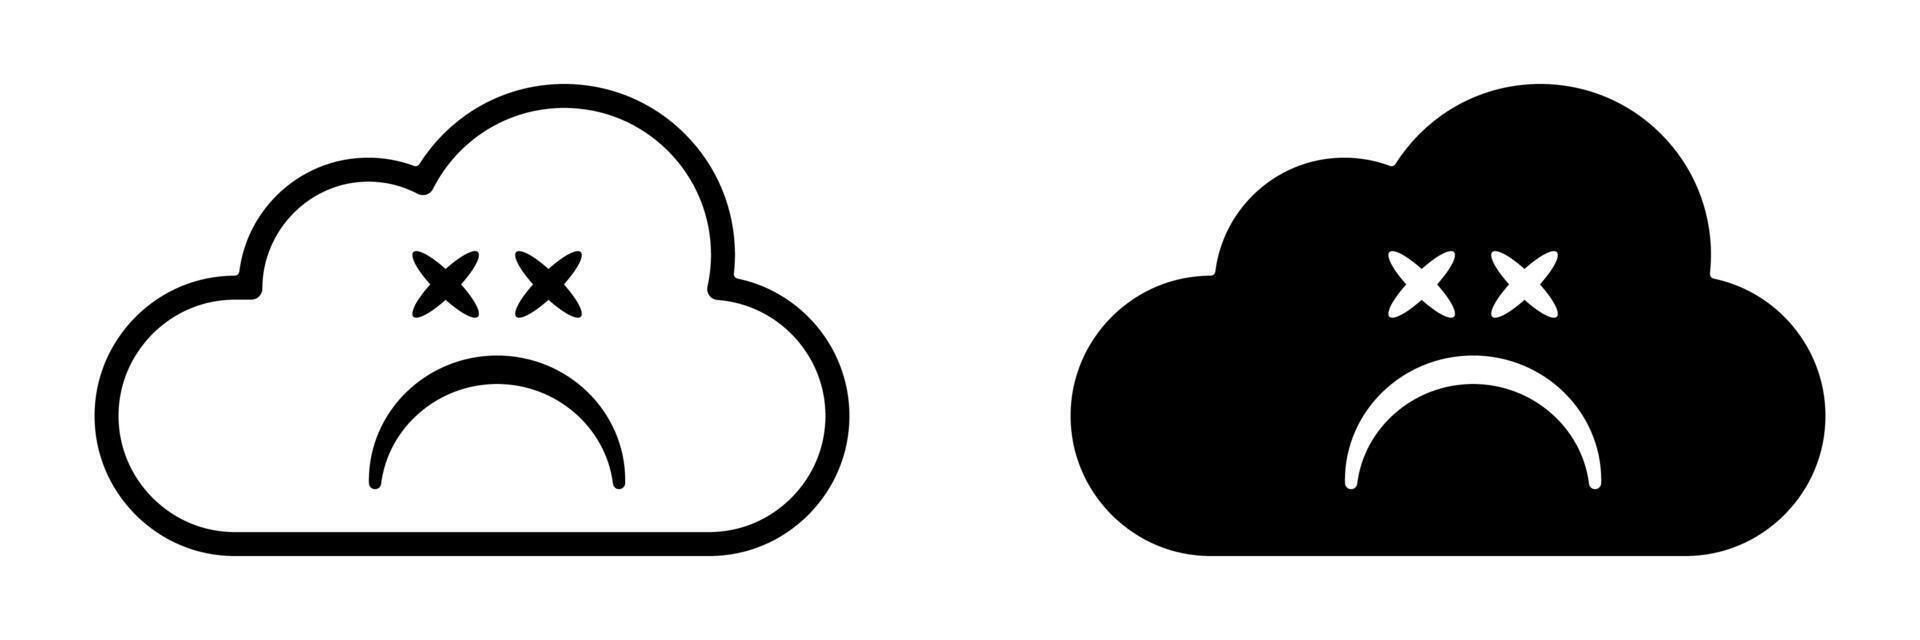 Sad cloud face icon. Bad internet connection symbol vector